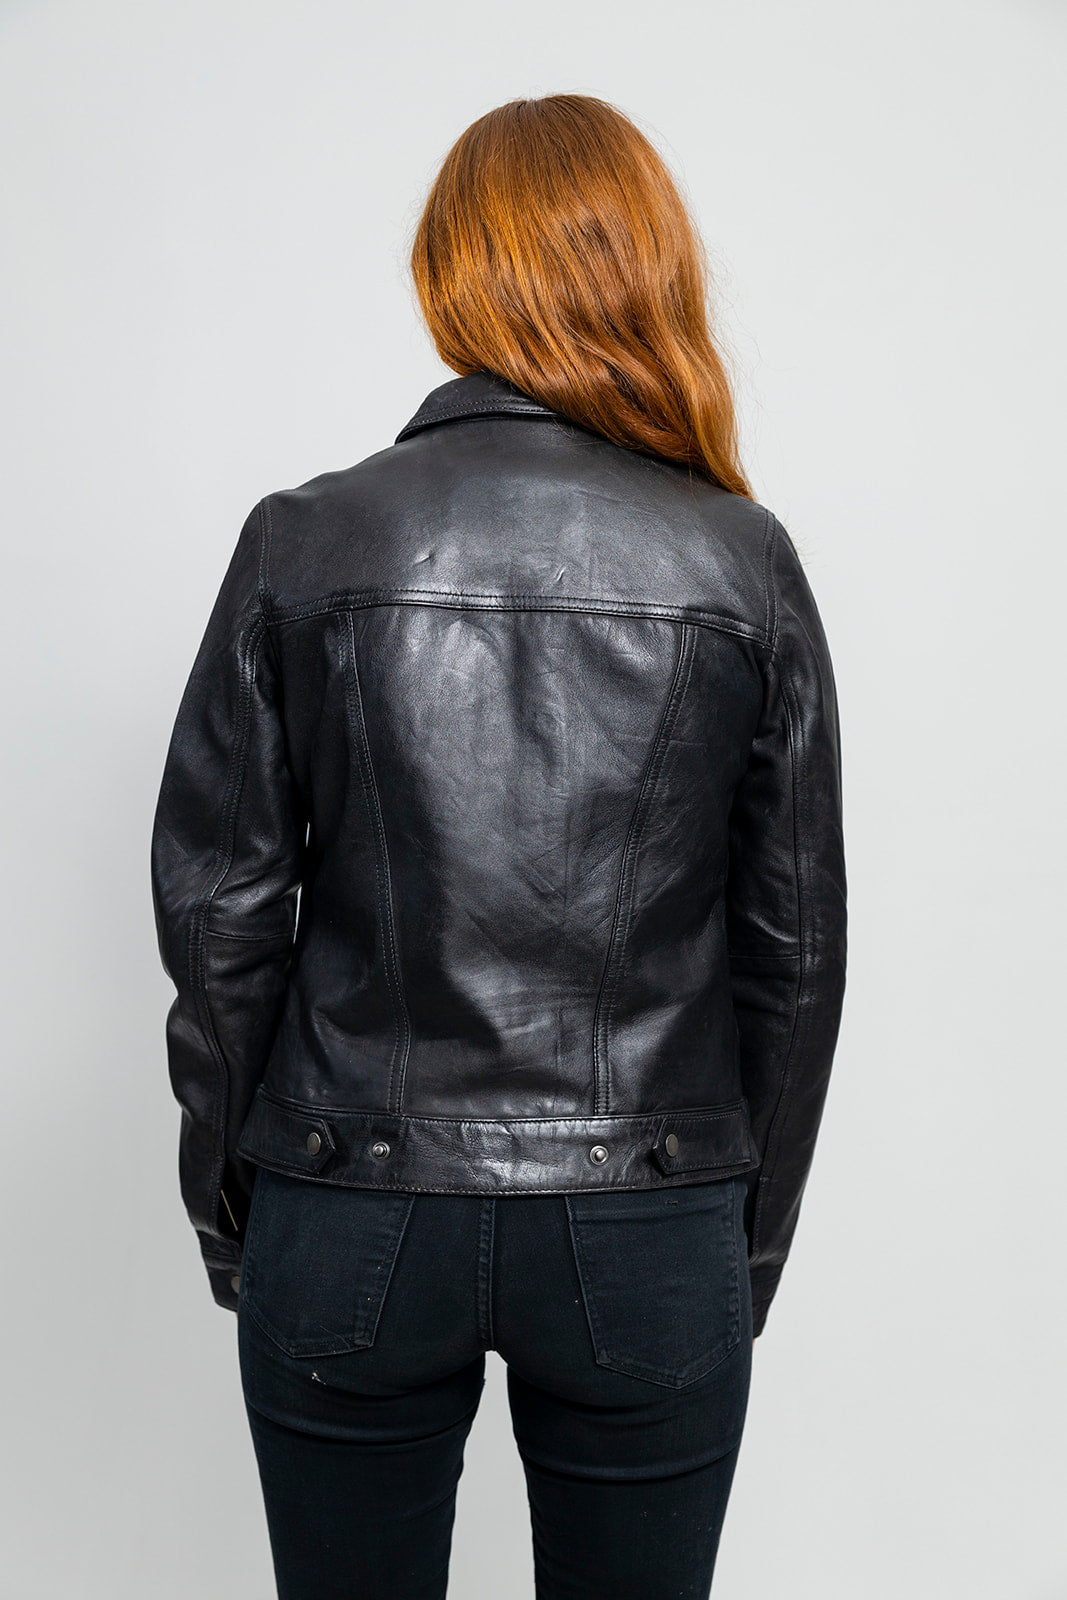 Madison Womens Fashion Leather Jacket Black Women's Leather Jacket Whet Blu NYC   